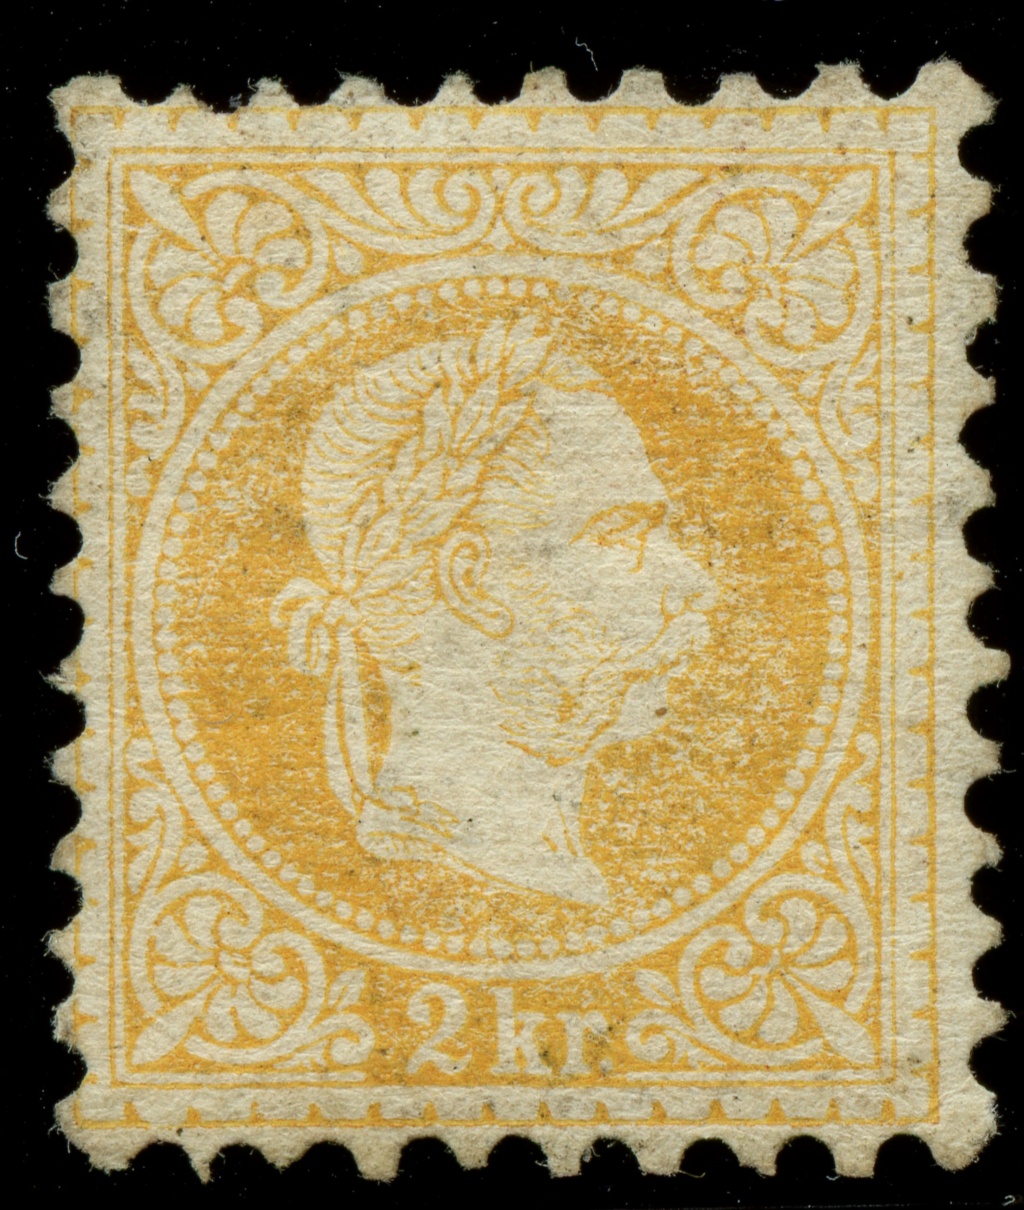 nach - Freimarken-Ausgabe 1867 : Kopfbildnis Kaiser Franz Joseph I - Seite 23 Ank_3522